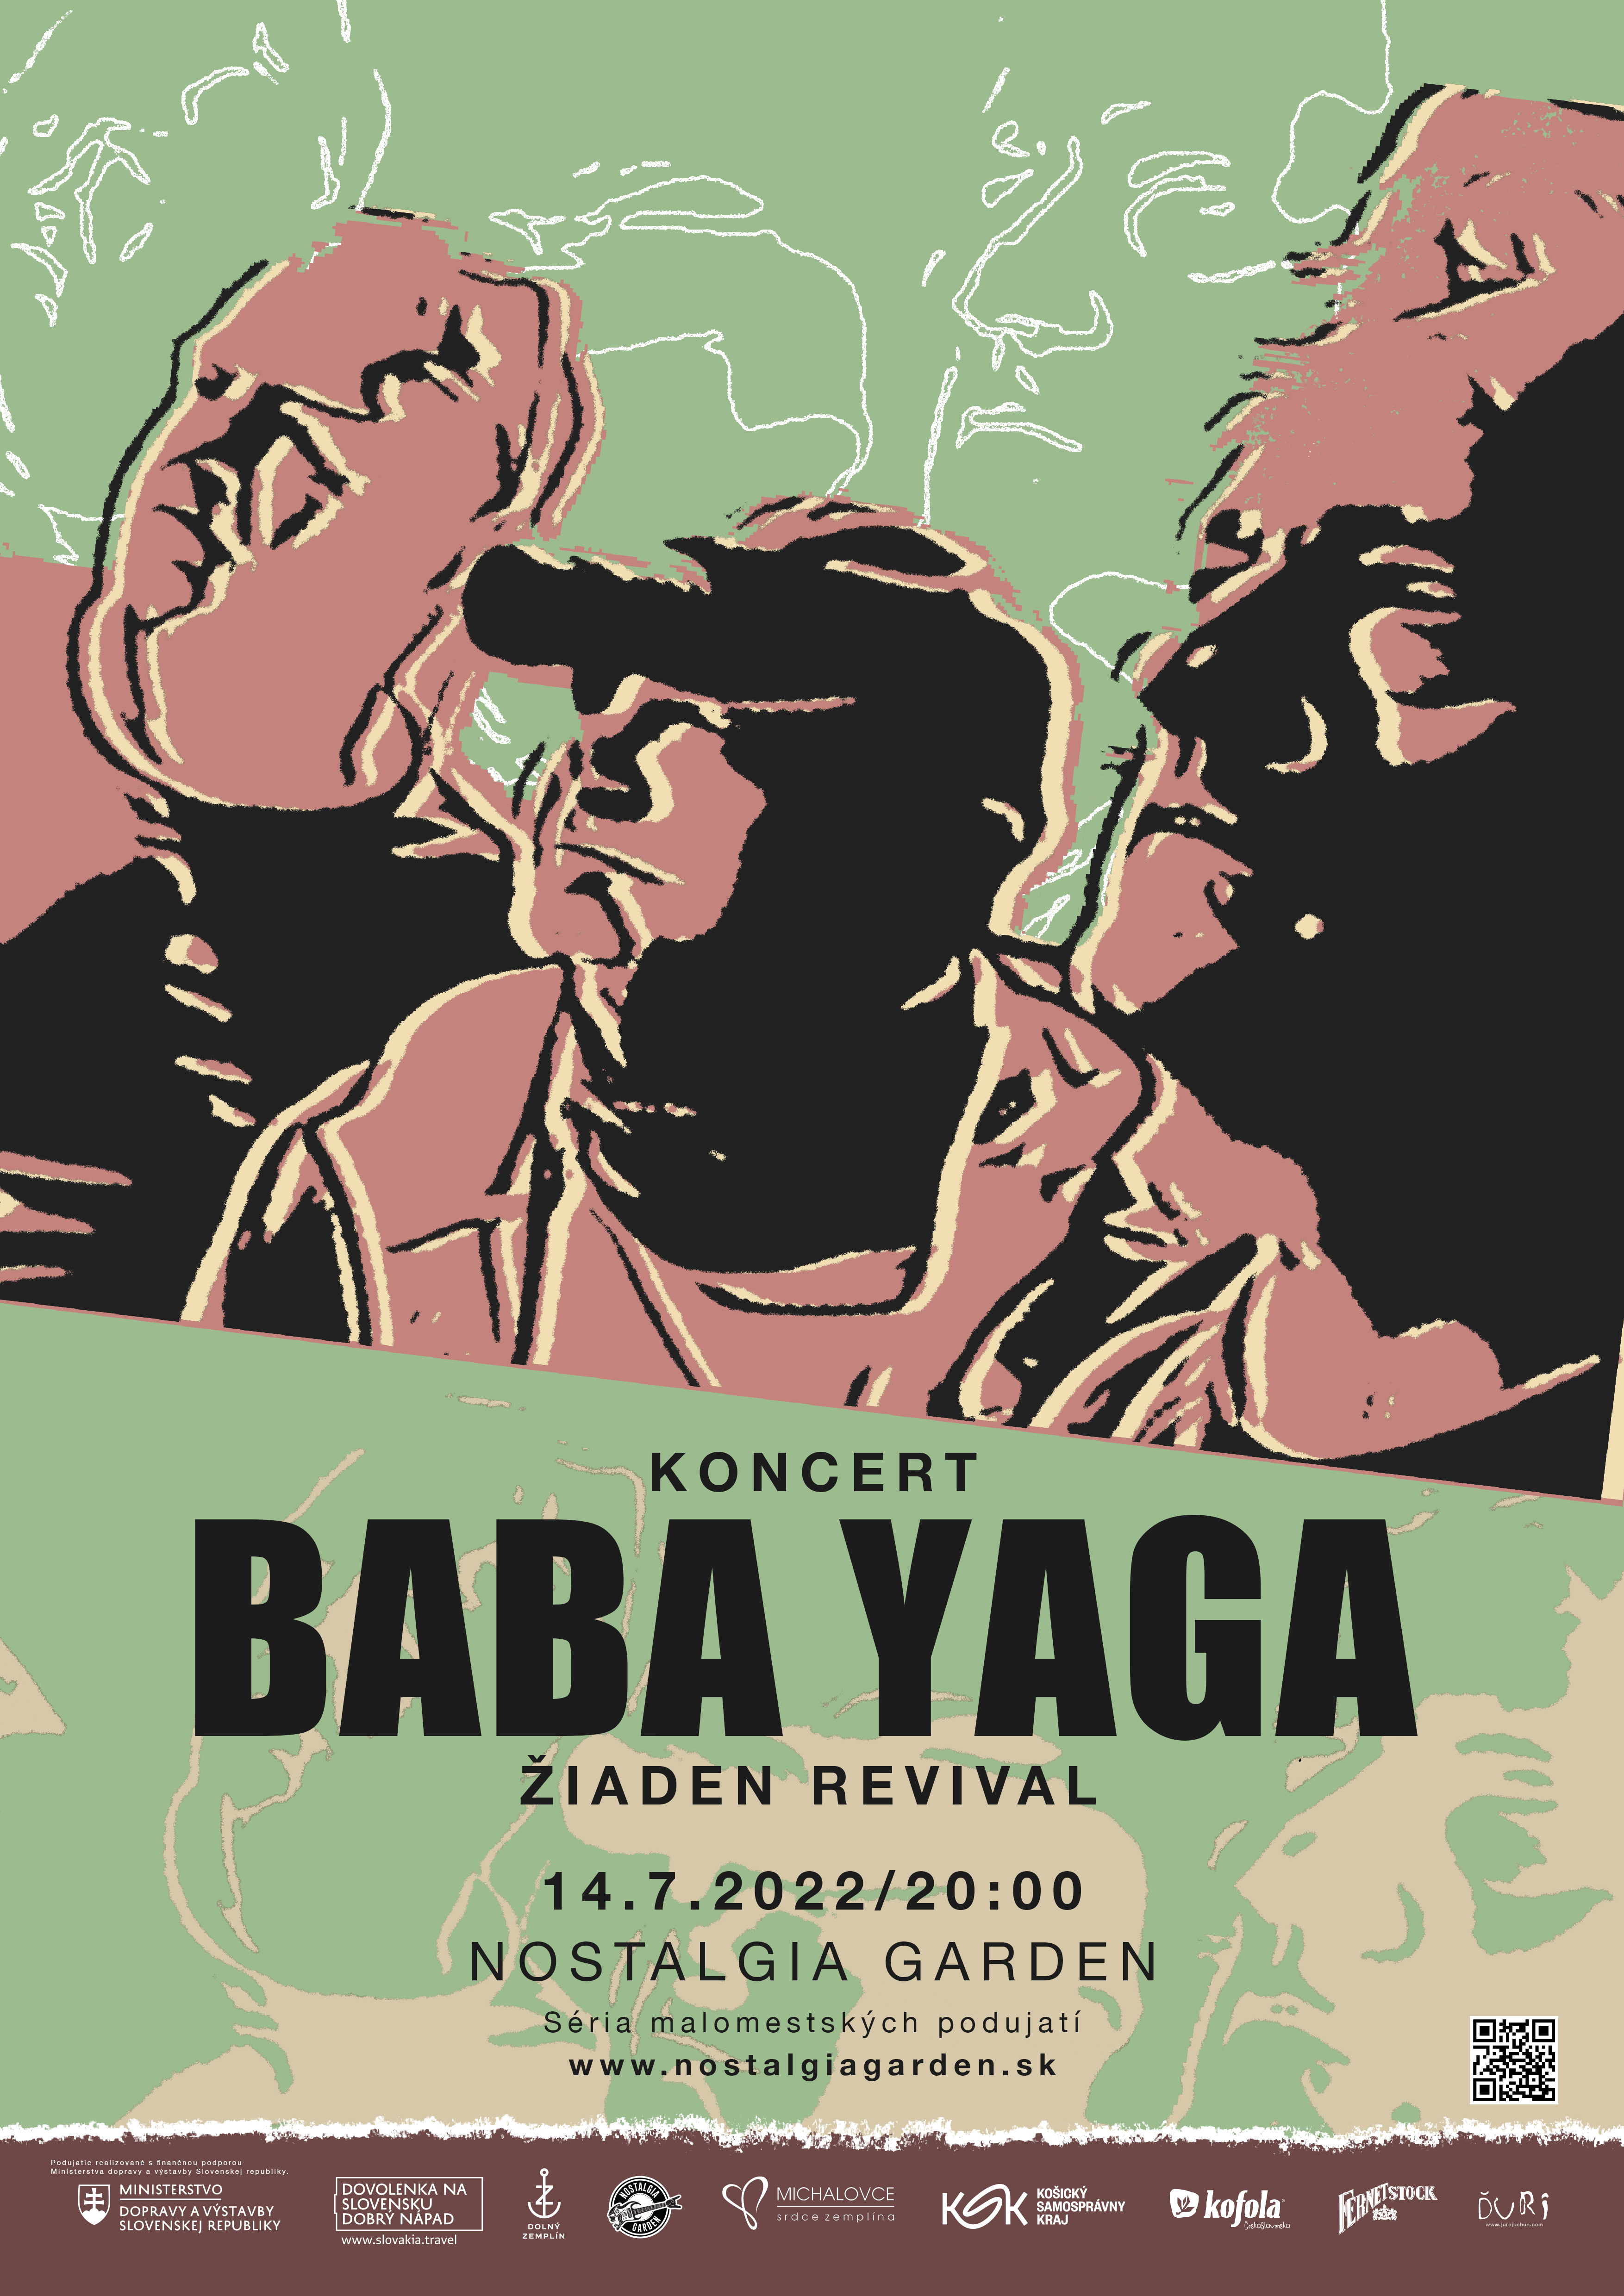 Plagát pre Baba Yaga